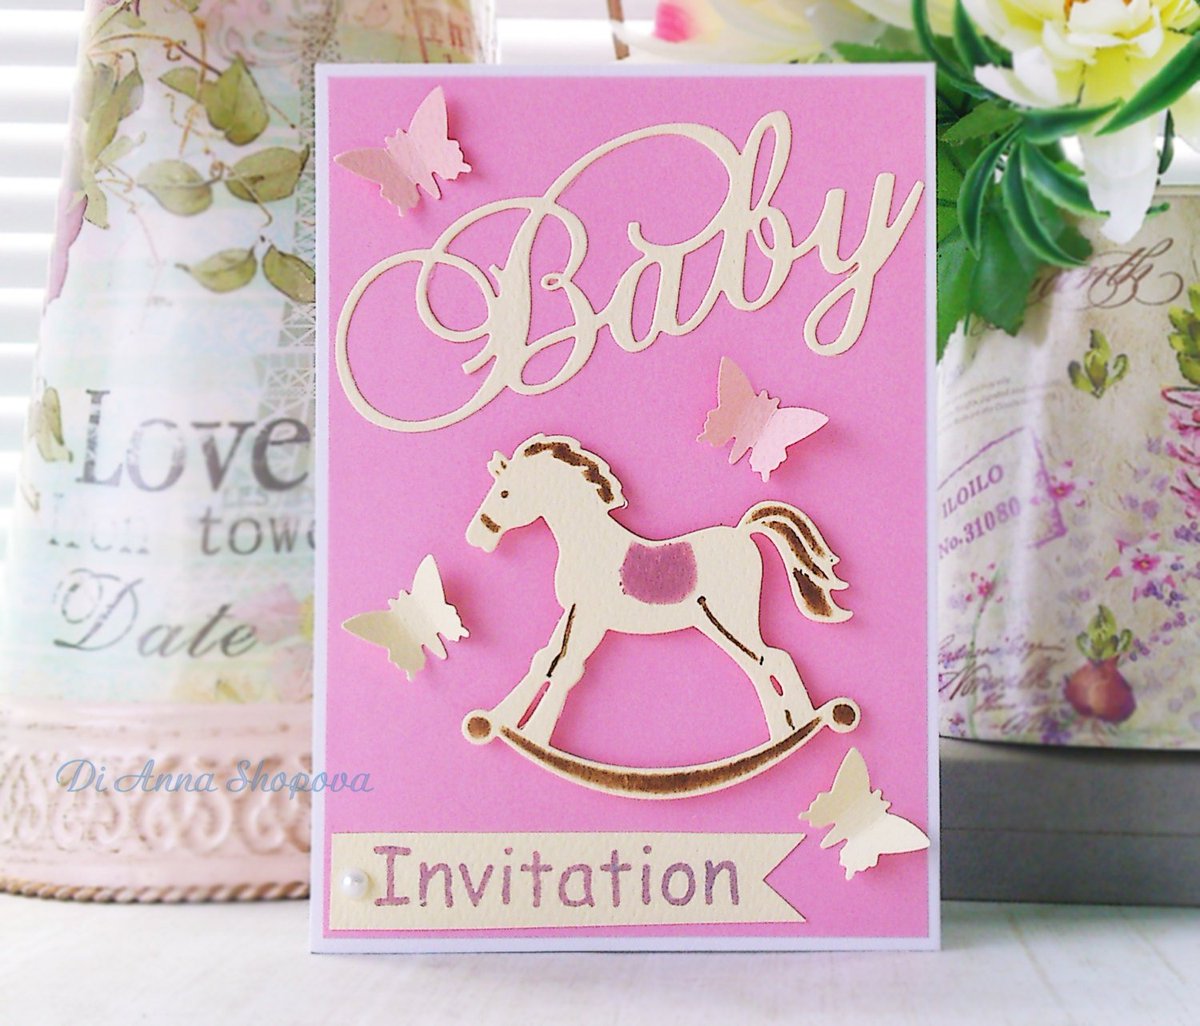 Luxury Baby Shower Invitations for a Girl - Handmade New Baby … tuppu.net/488ebb52 #EpicOnEtsy #BabyInvitations